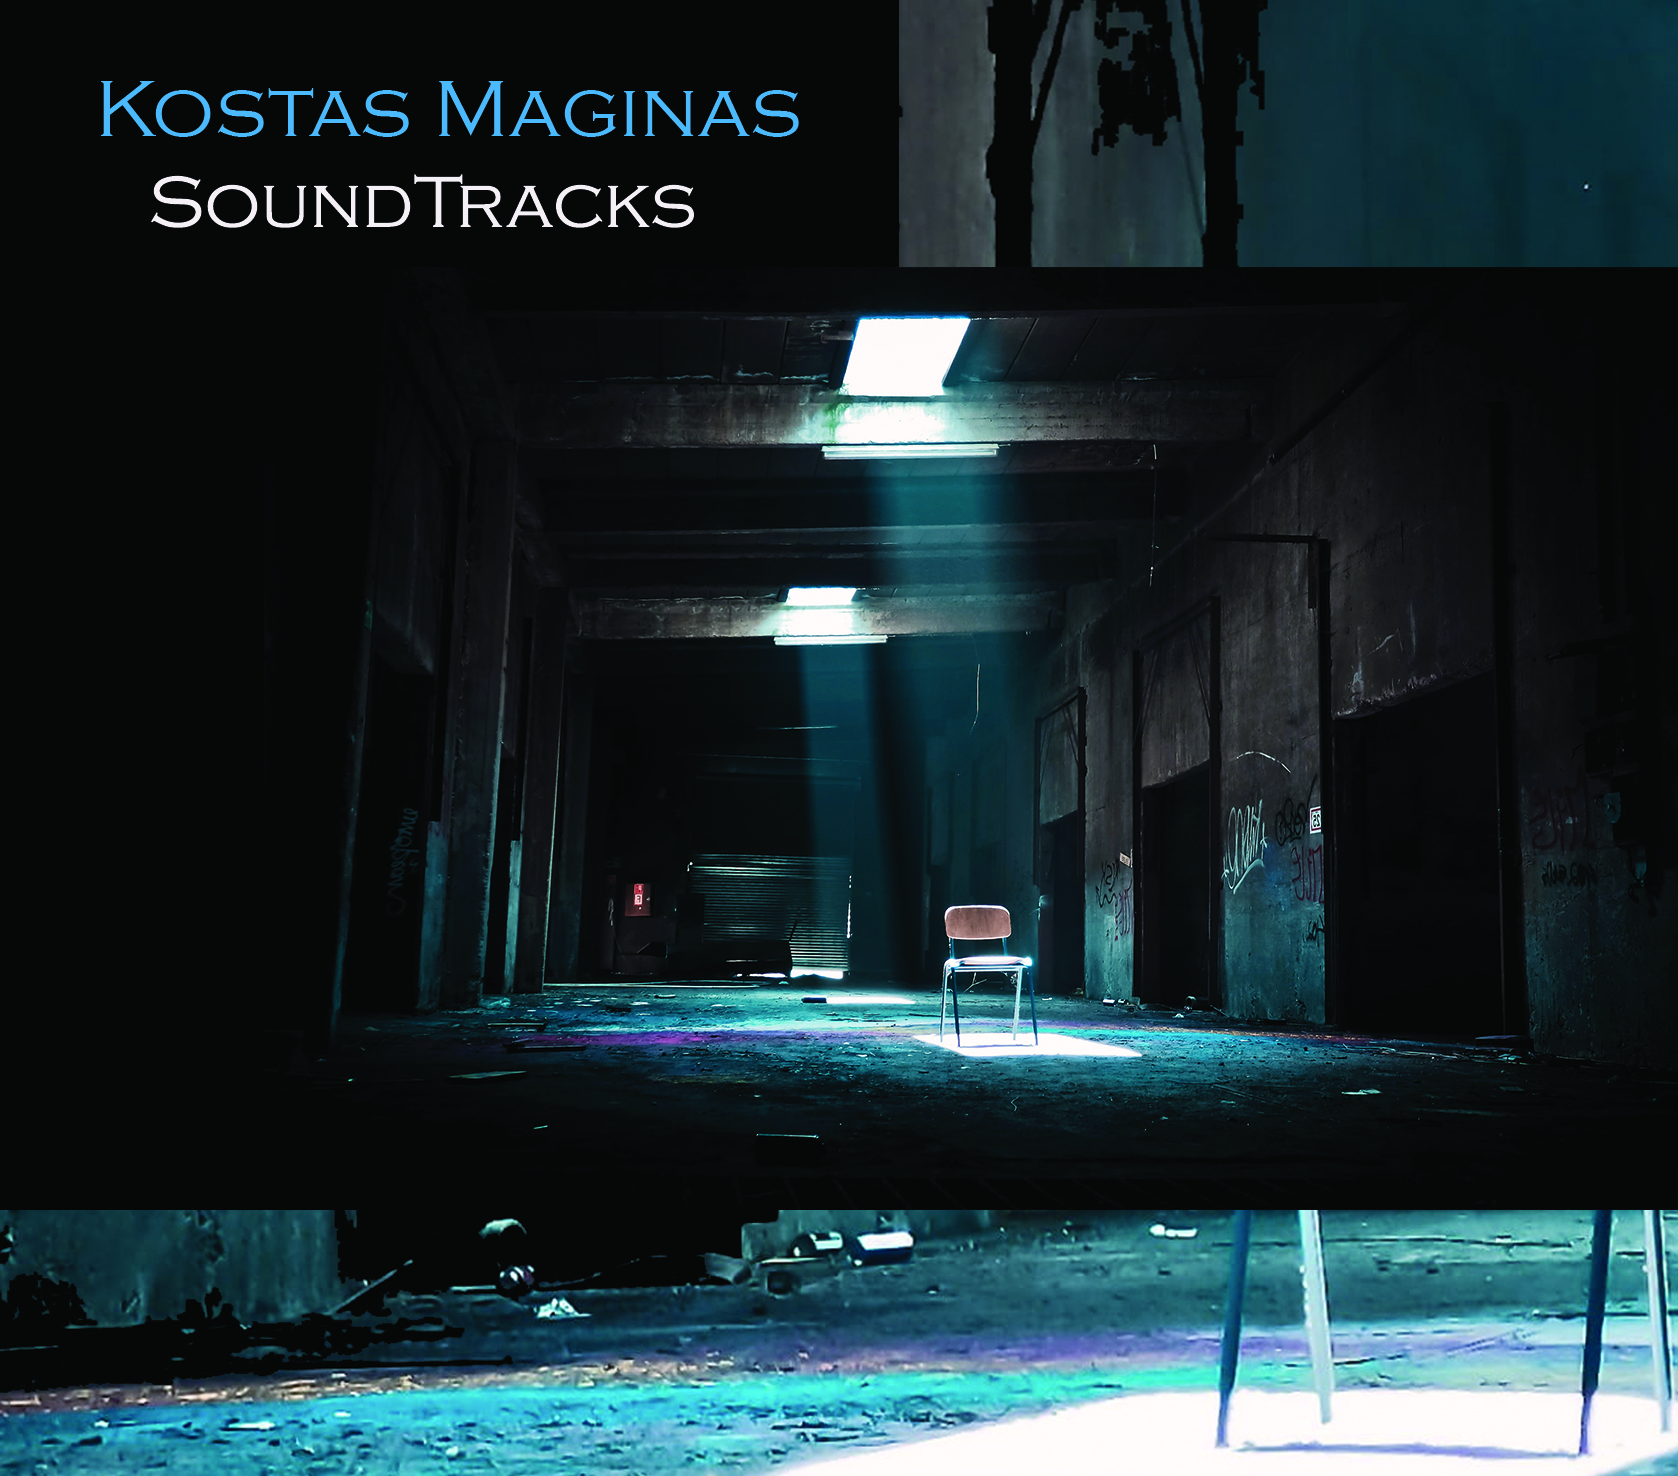 soundtracks-cover-magginas.jpg